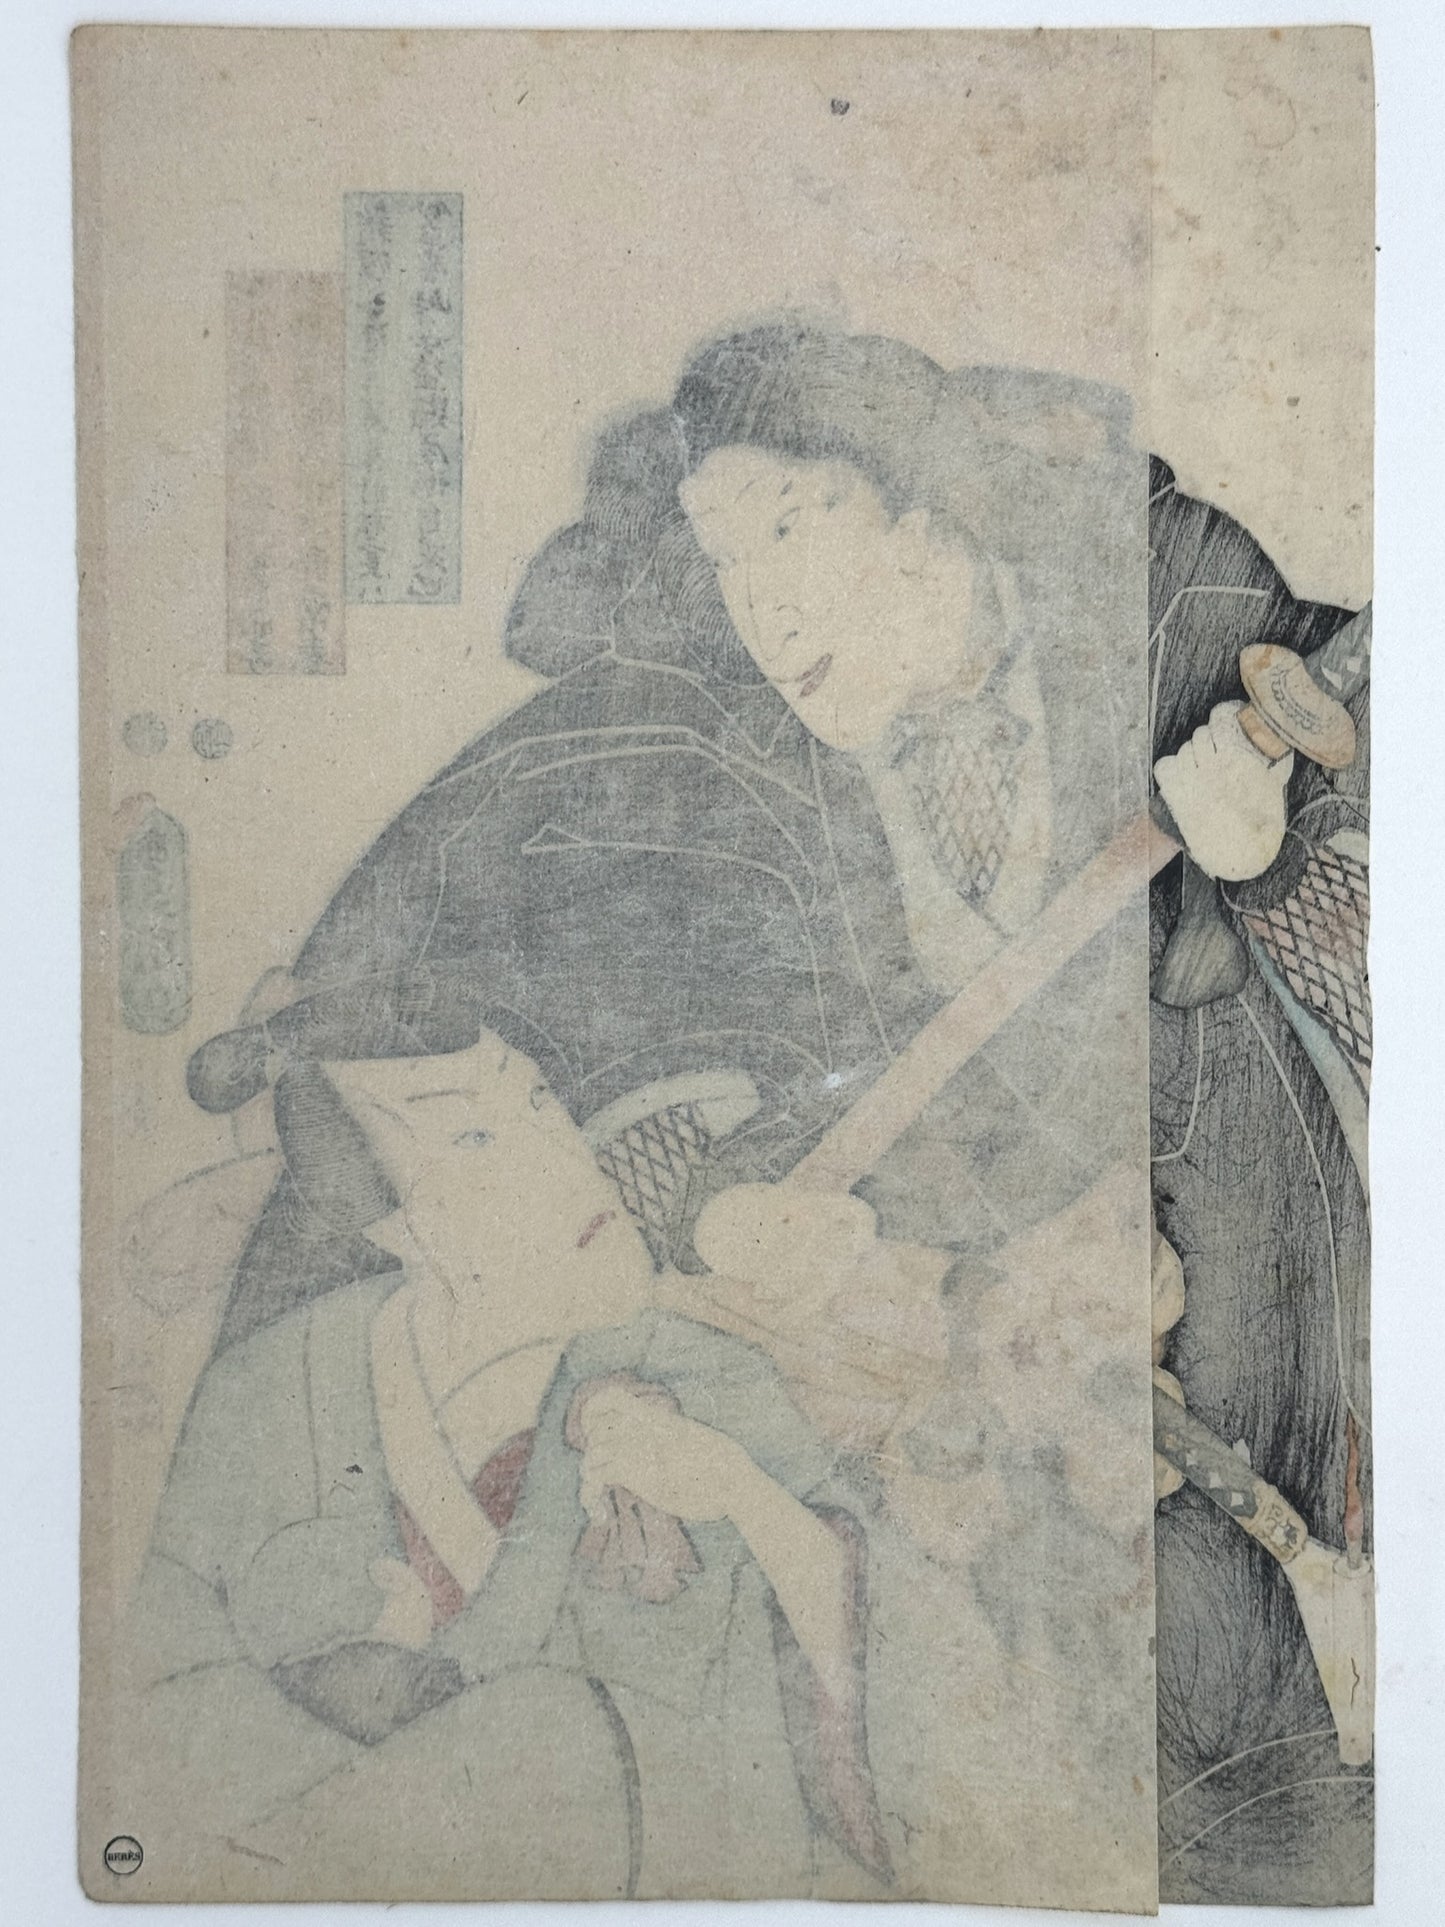 estampe kunisada toyokuni 3 deux acteurs de kabuki et bébé, dos de l'estampe